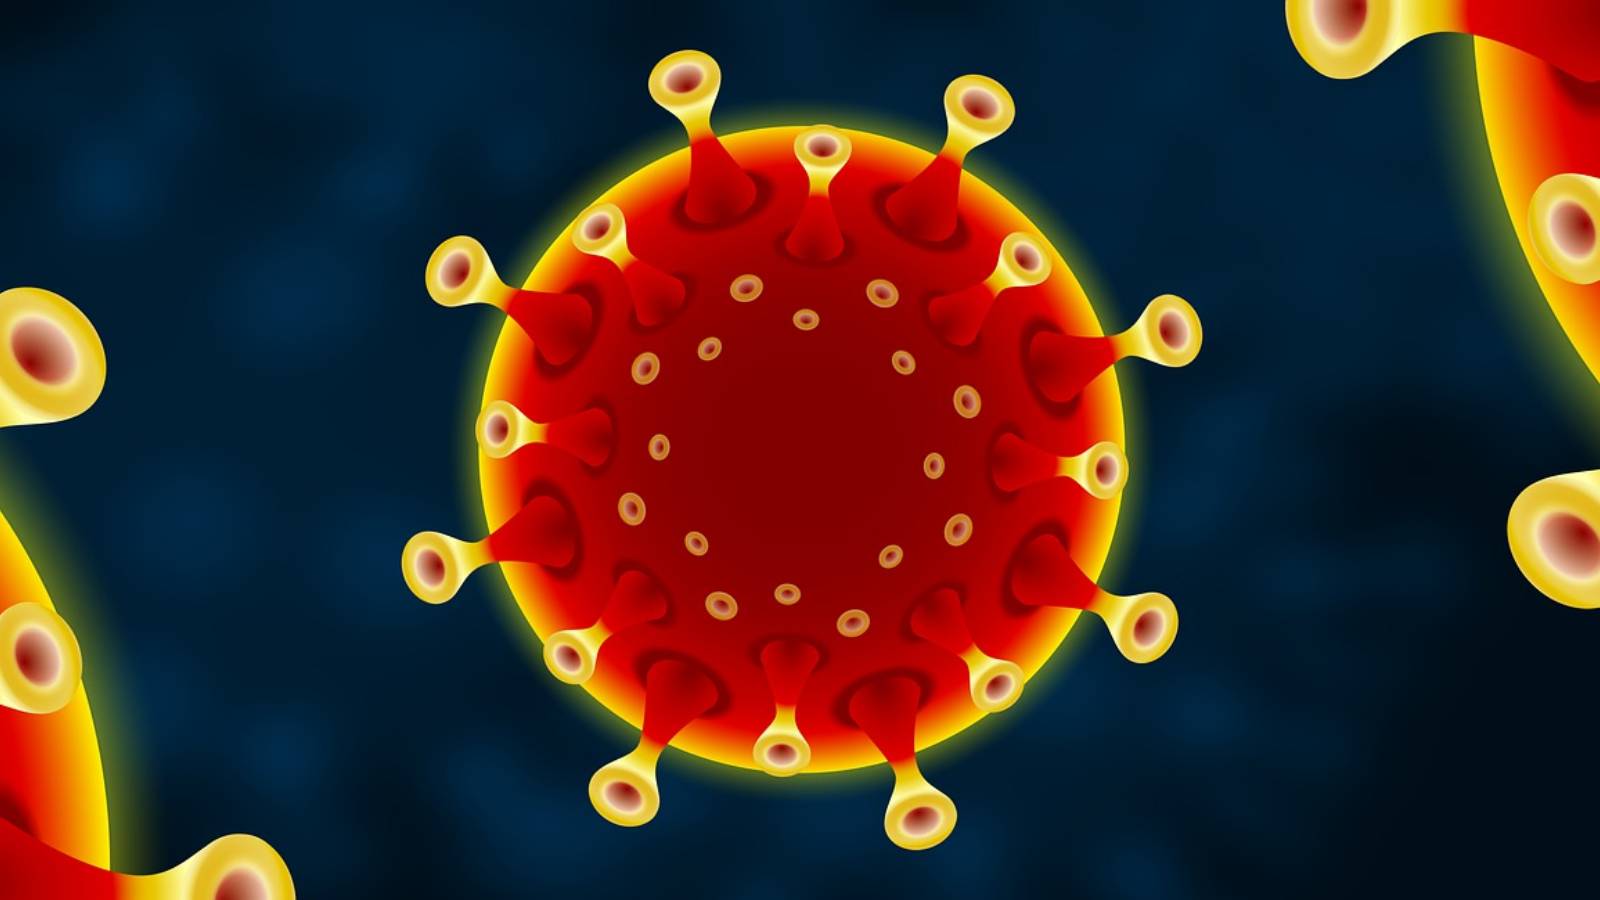 Romanian koronavirus uusien tapausten määrä 14